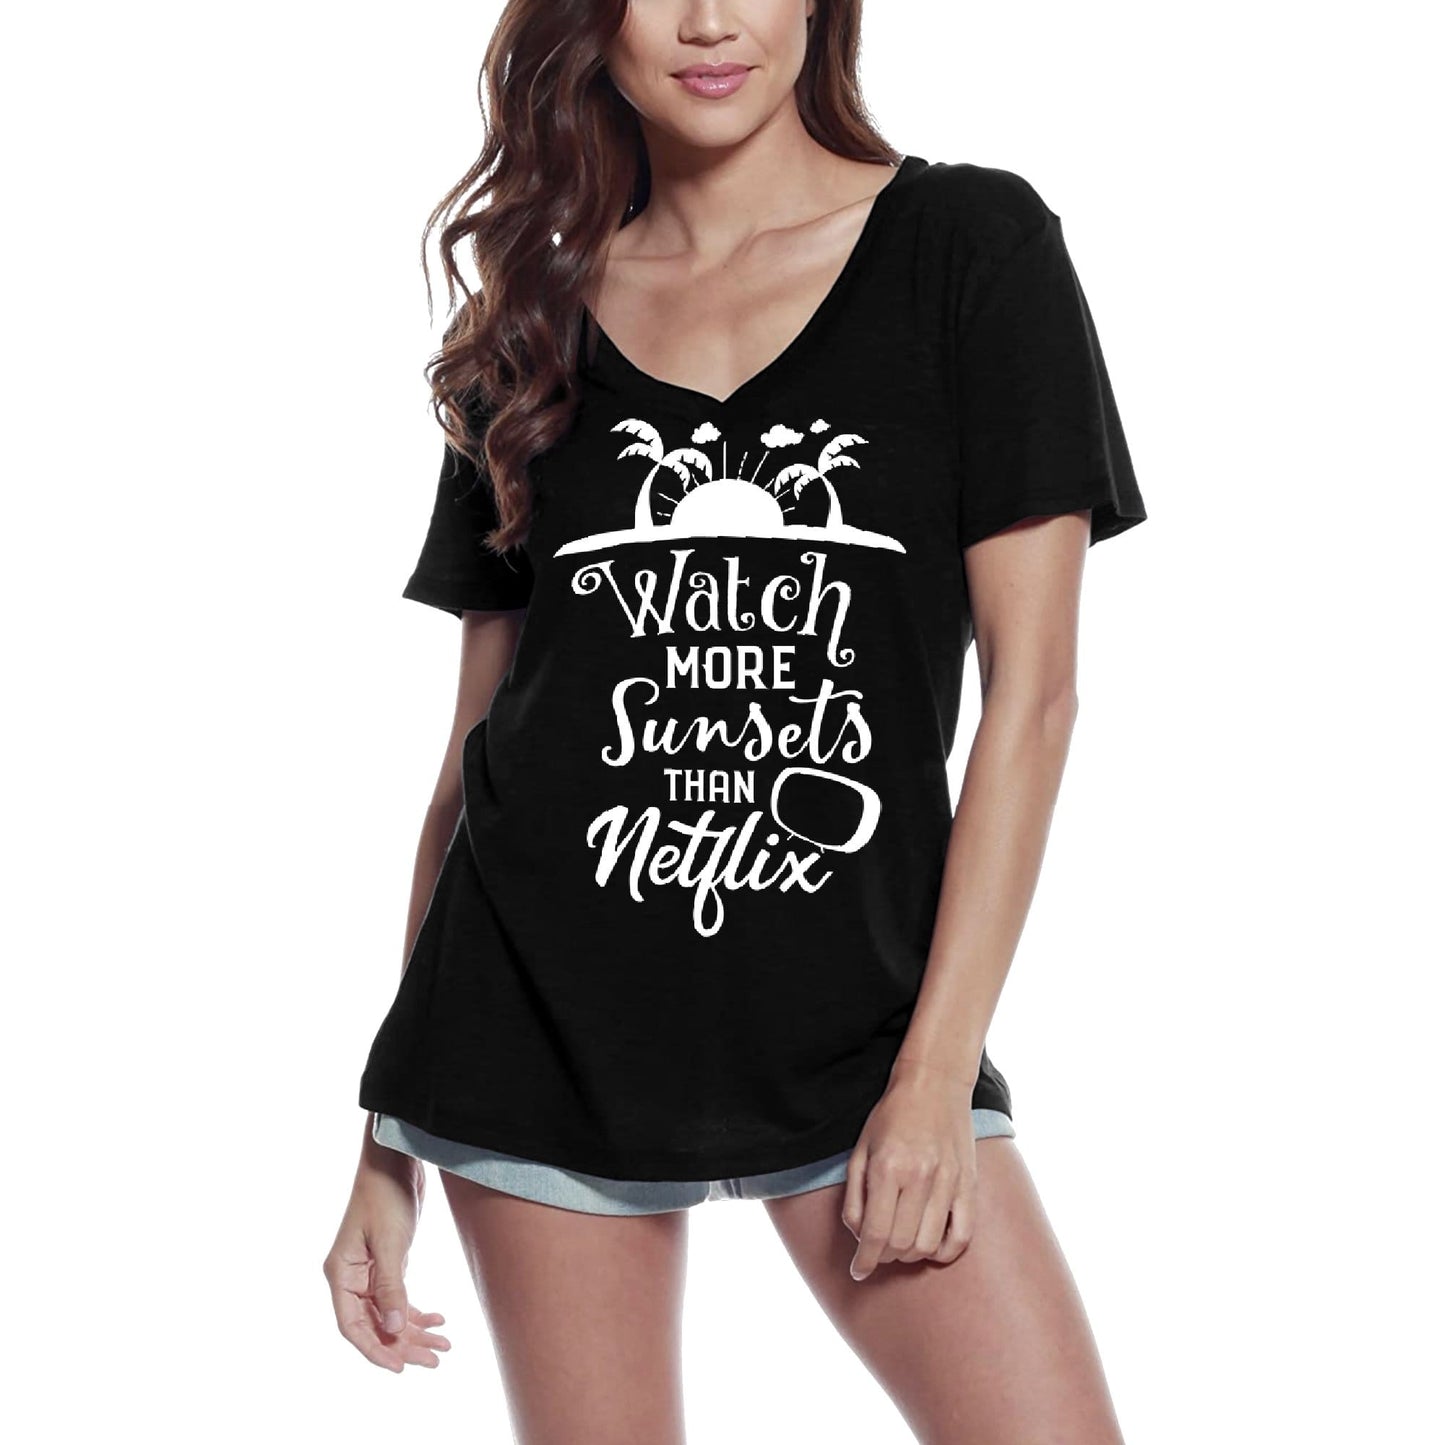 ULTRABASIC Women's T-Shirt Watch More Sunsets than ... - Tee Shirt Tops